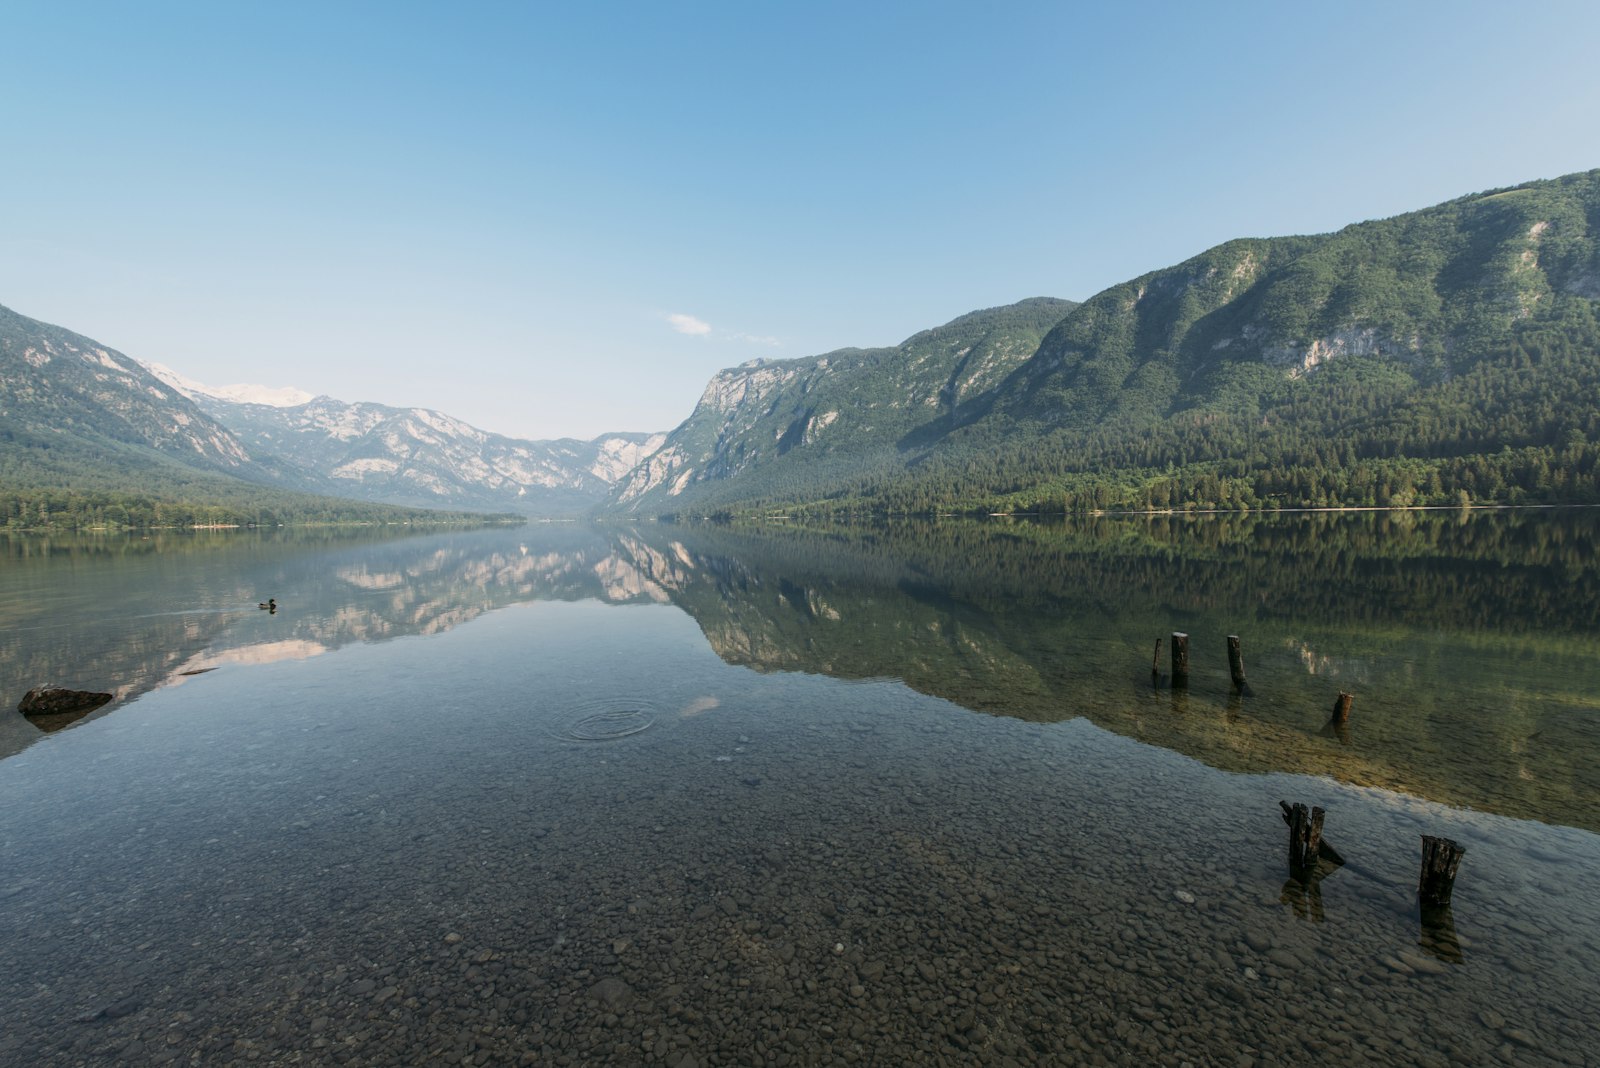 Nikon AF-S Nikkor 14-24mm F2.8G ED sample photo. Landscape photography of lake photography